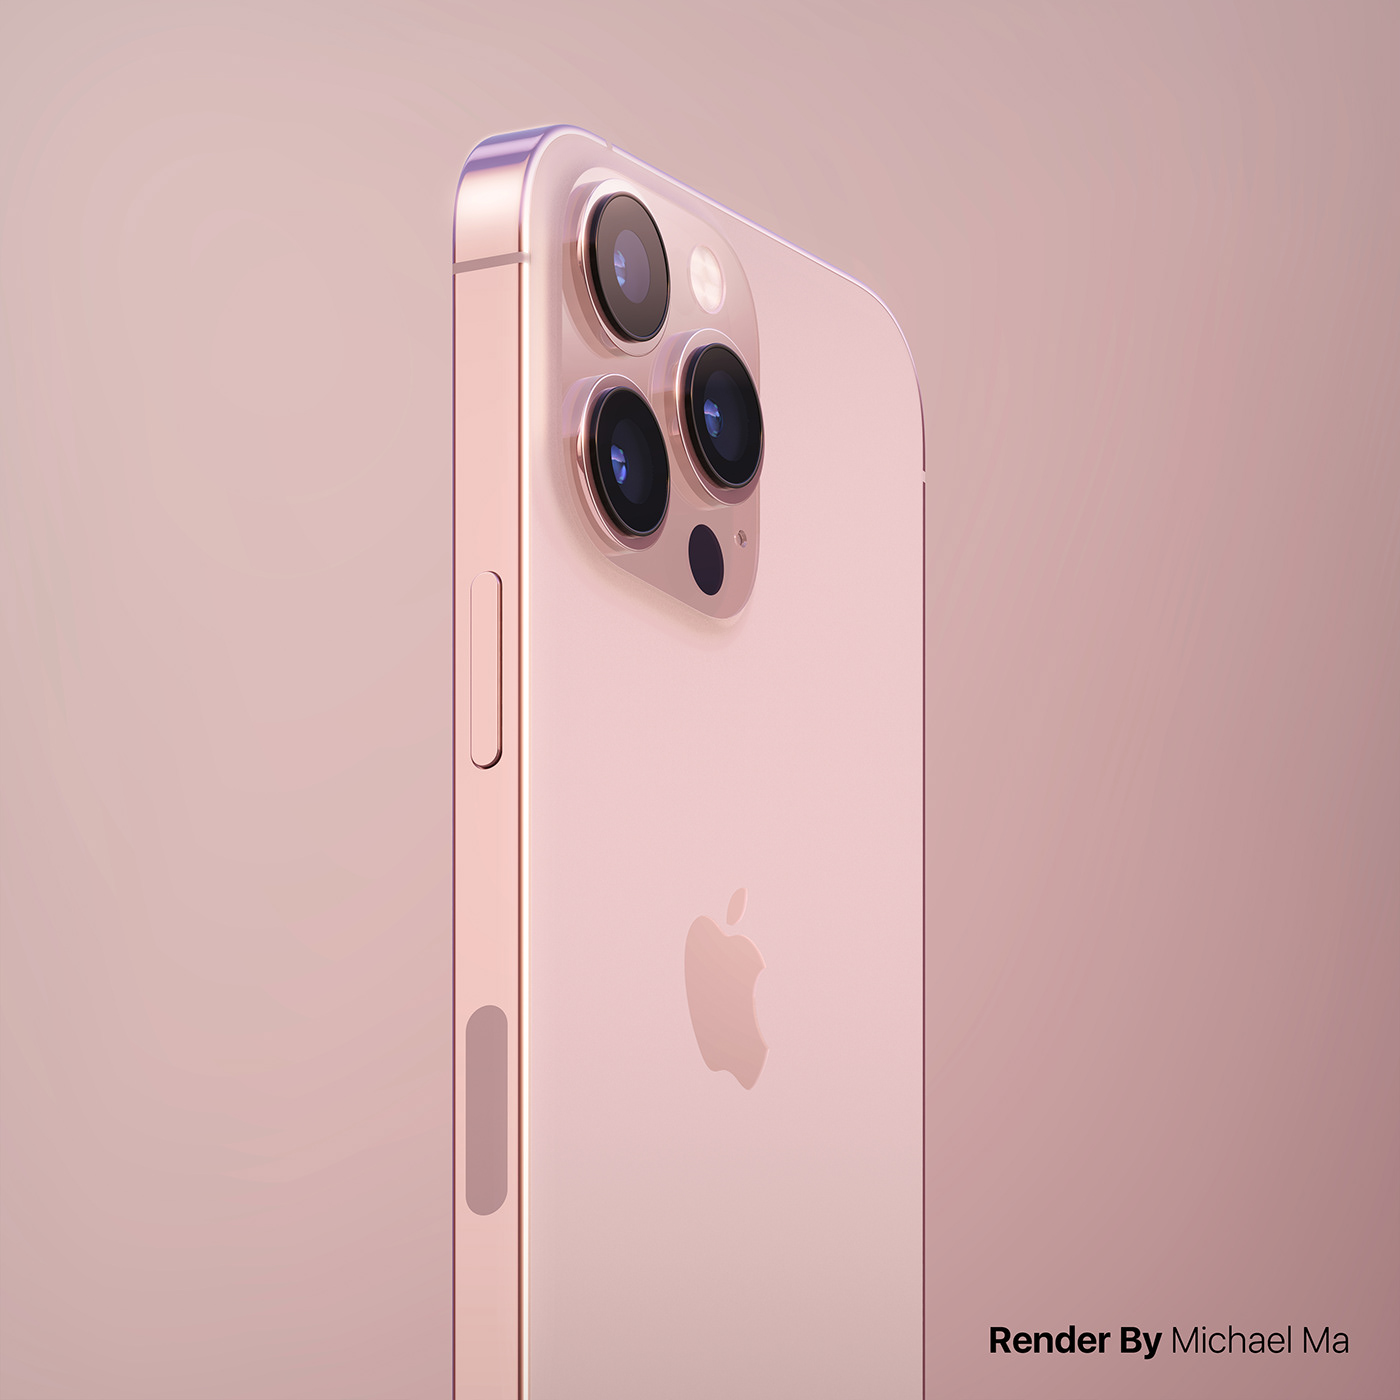 3drender apple concept design iphone iphone 13 iphone 13 pro keyshot Render visualization